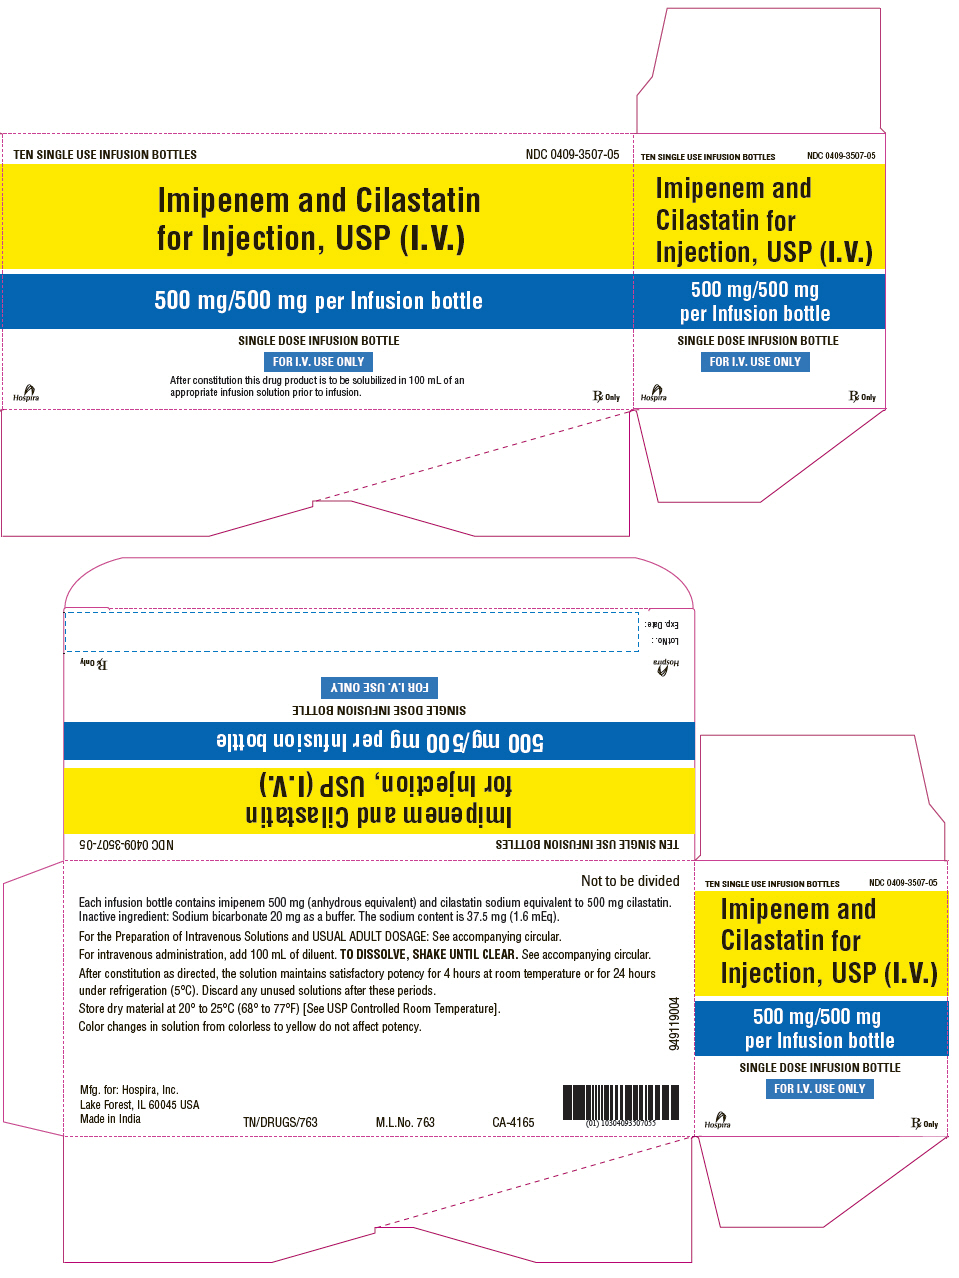 PRINCIPAL DISPLAY PANEL - 500 mg/500 mg Infusion Bottle Carton